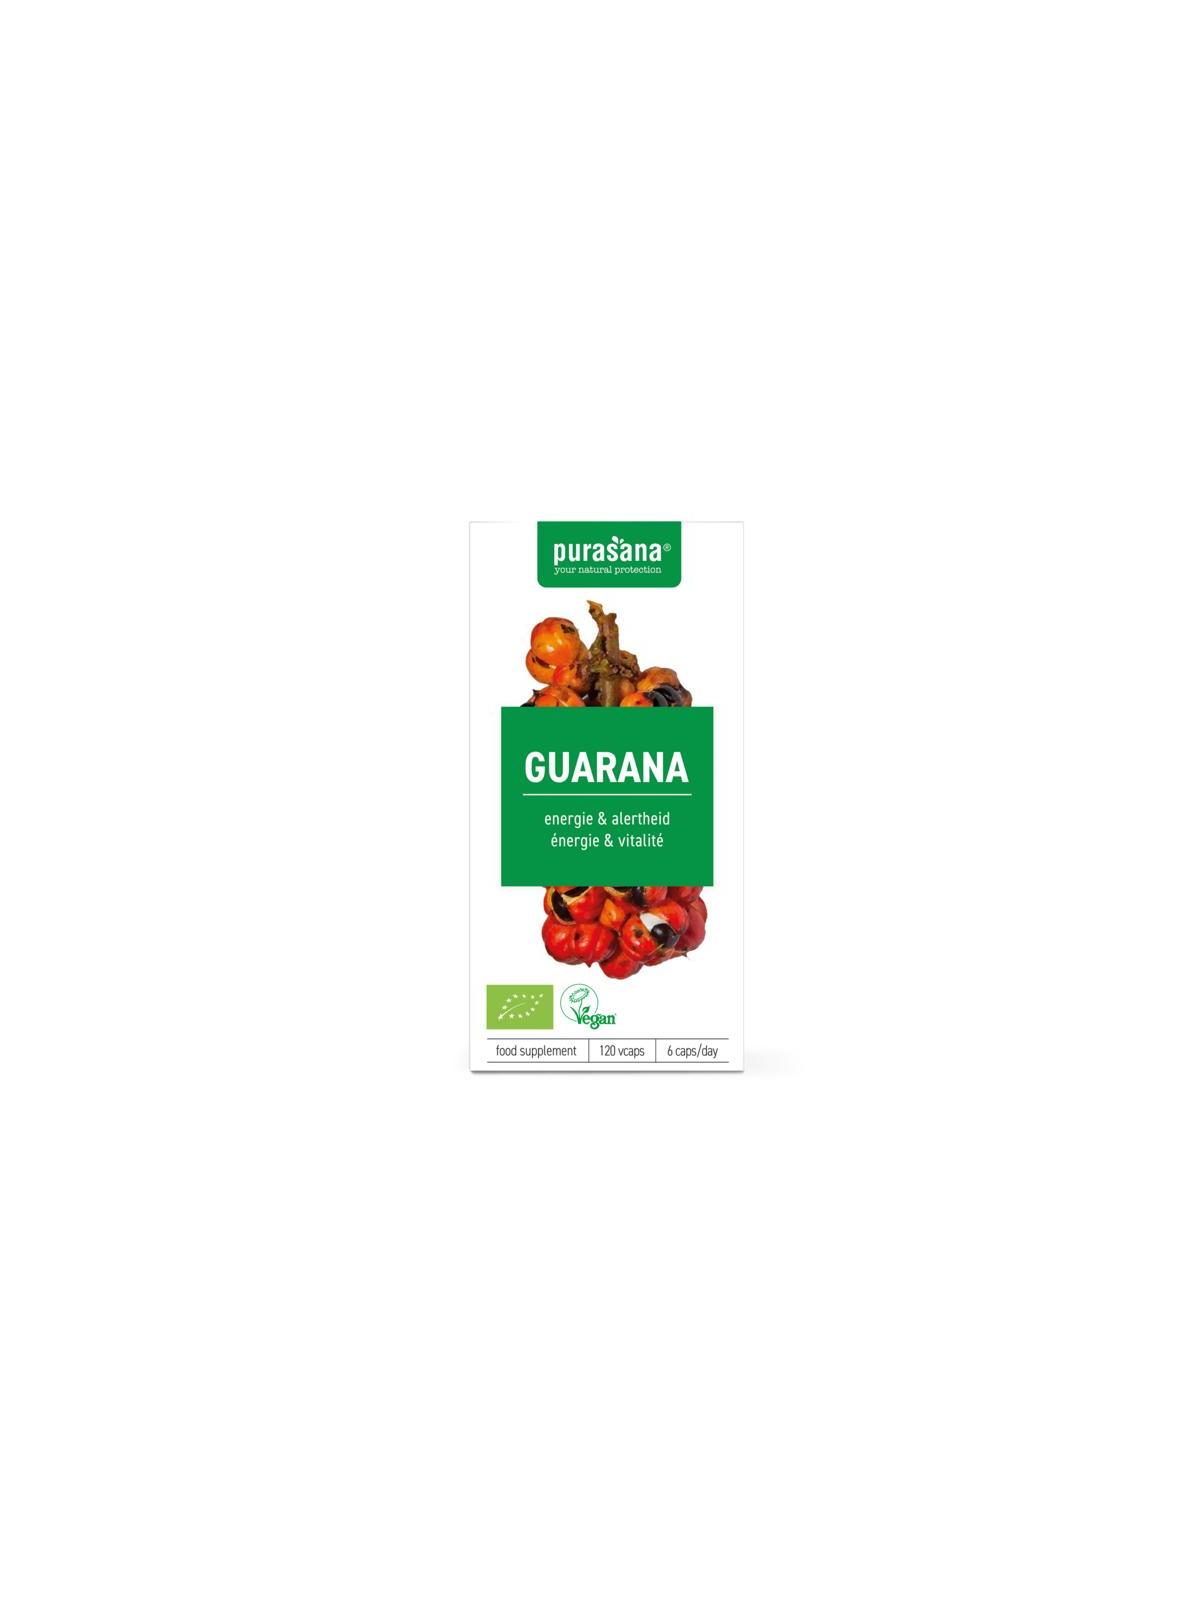 Guarana vegan bio